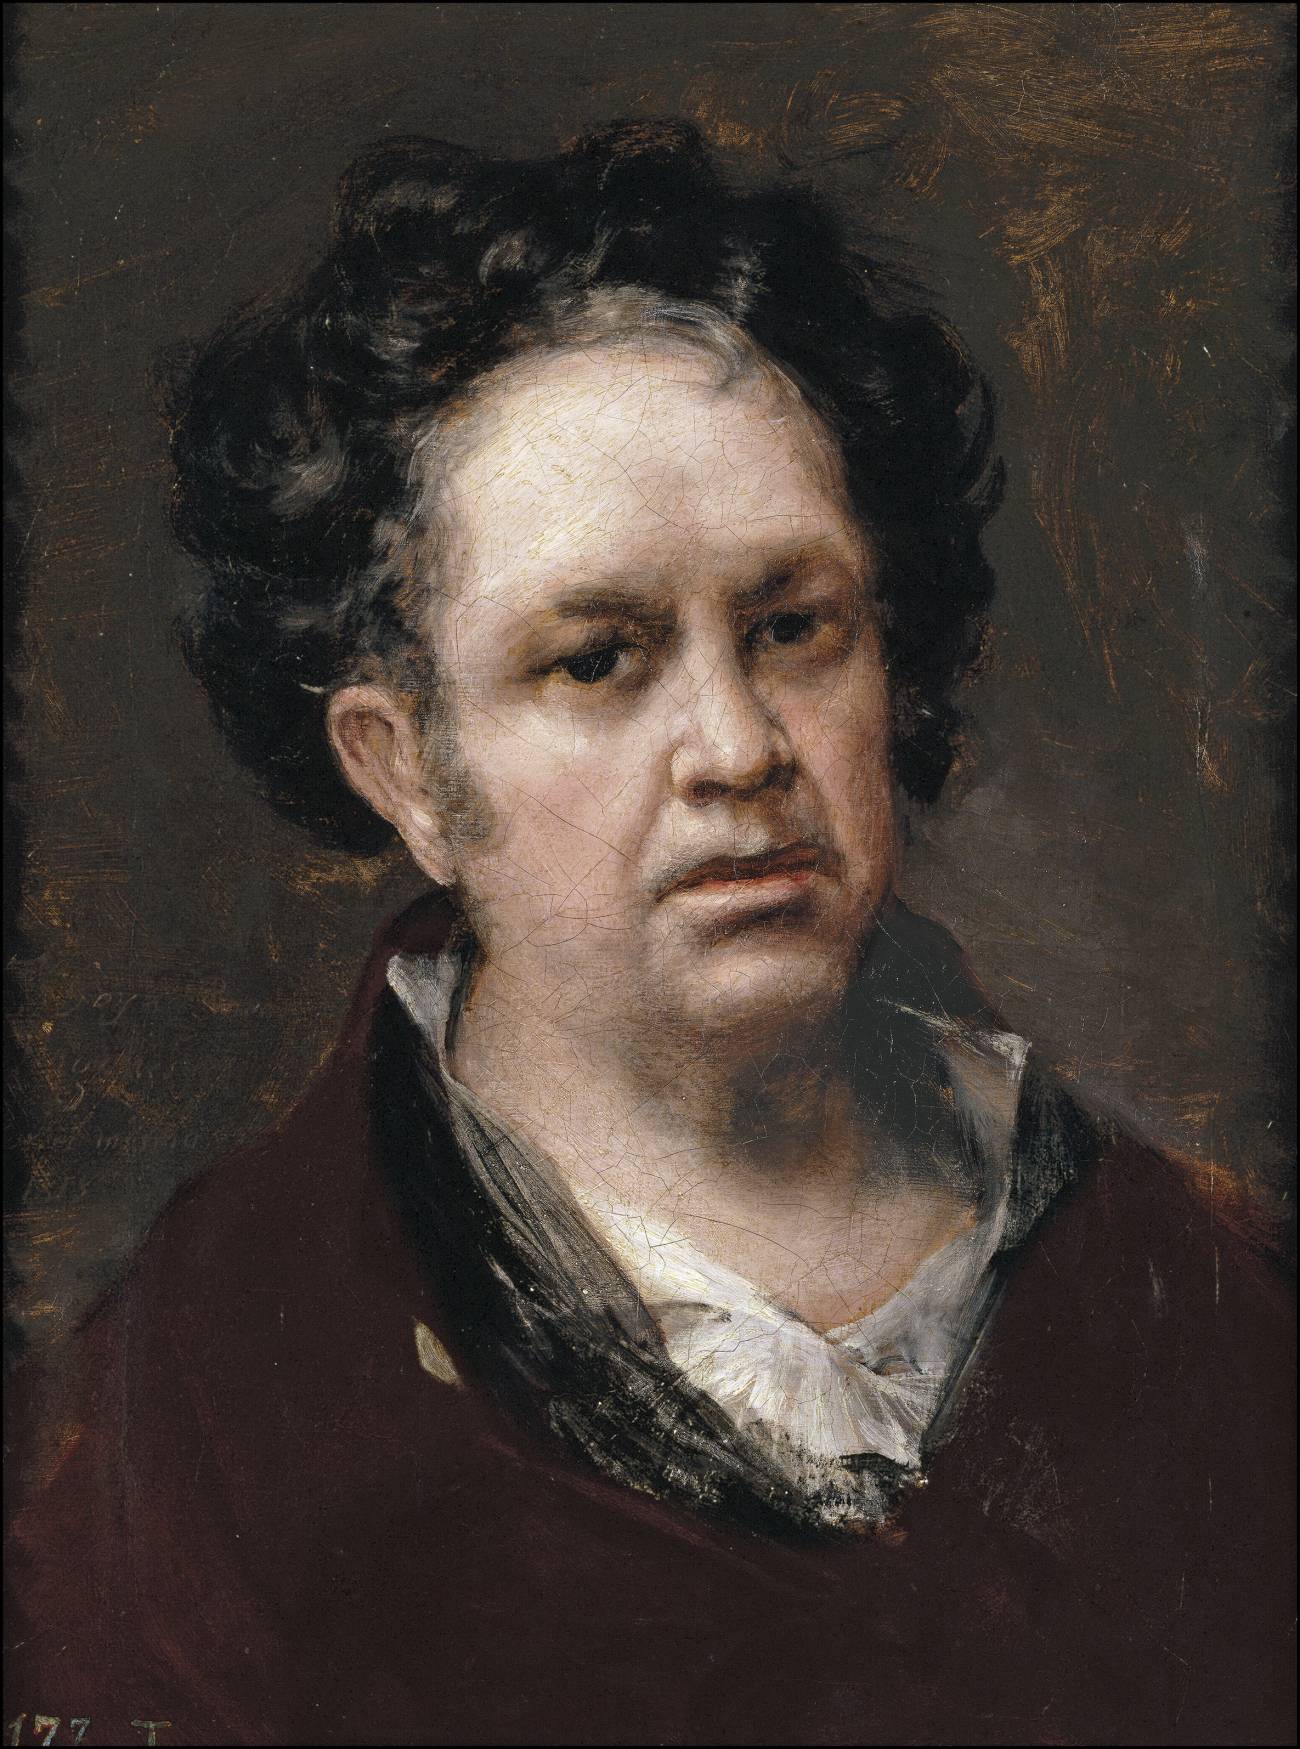 Goya, encumbrado como padre de la pintura moderna con una macro-exposición en su Zaragoza natal 